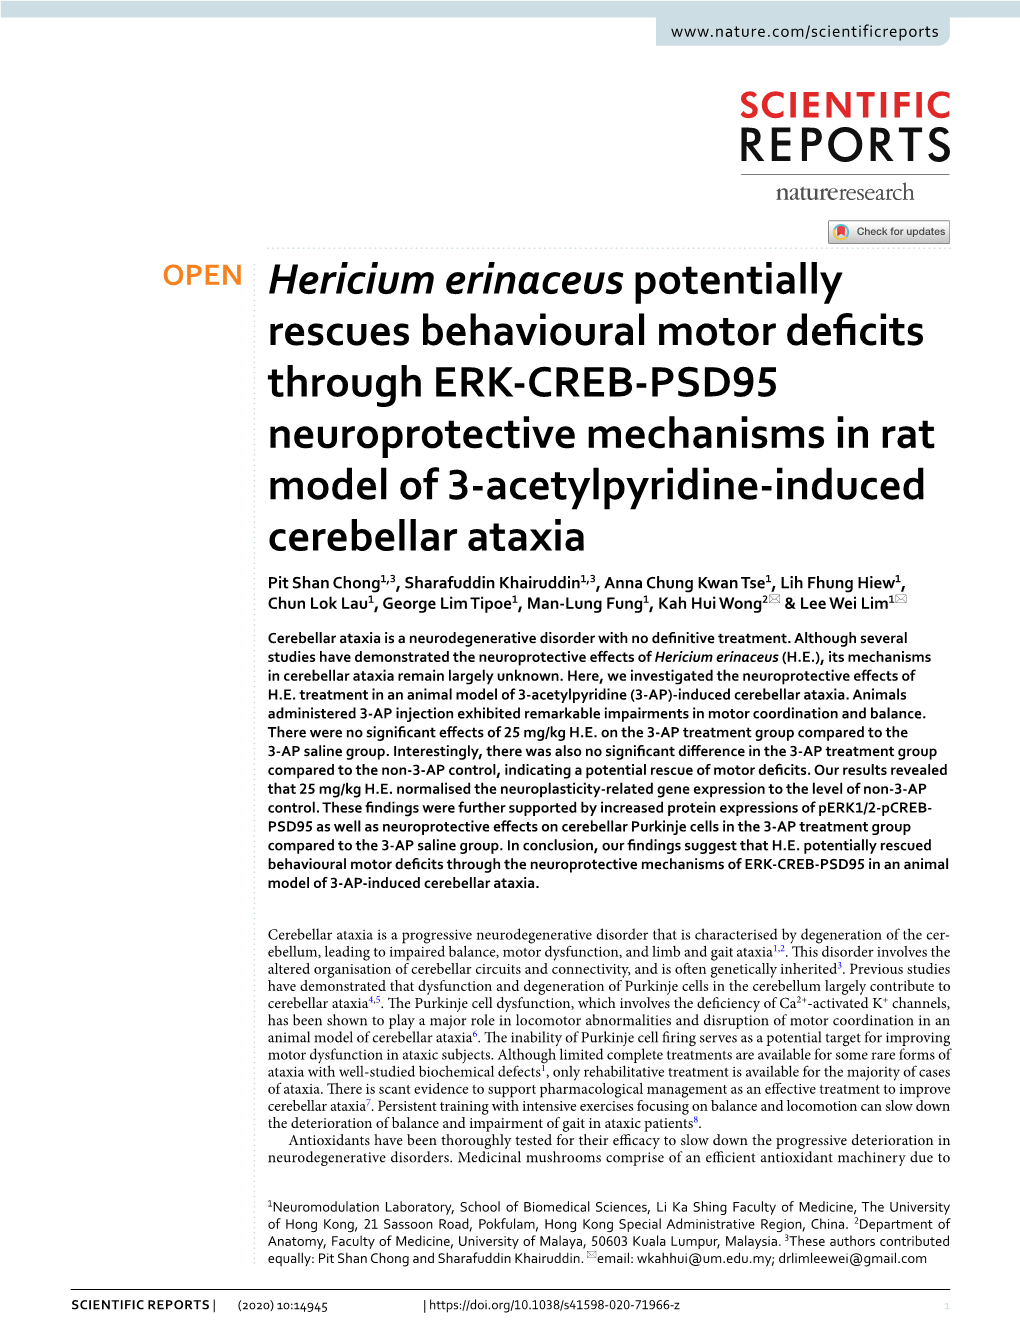 Hericium Erinaceus Potentially Rescues Behavioural Motor Deficits